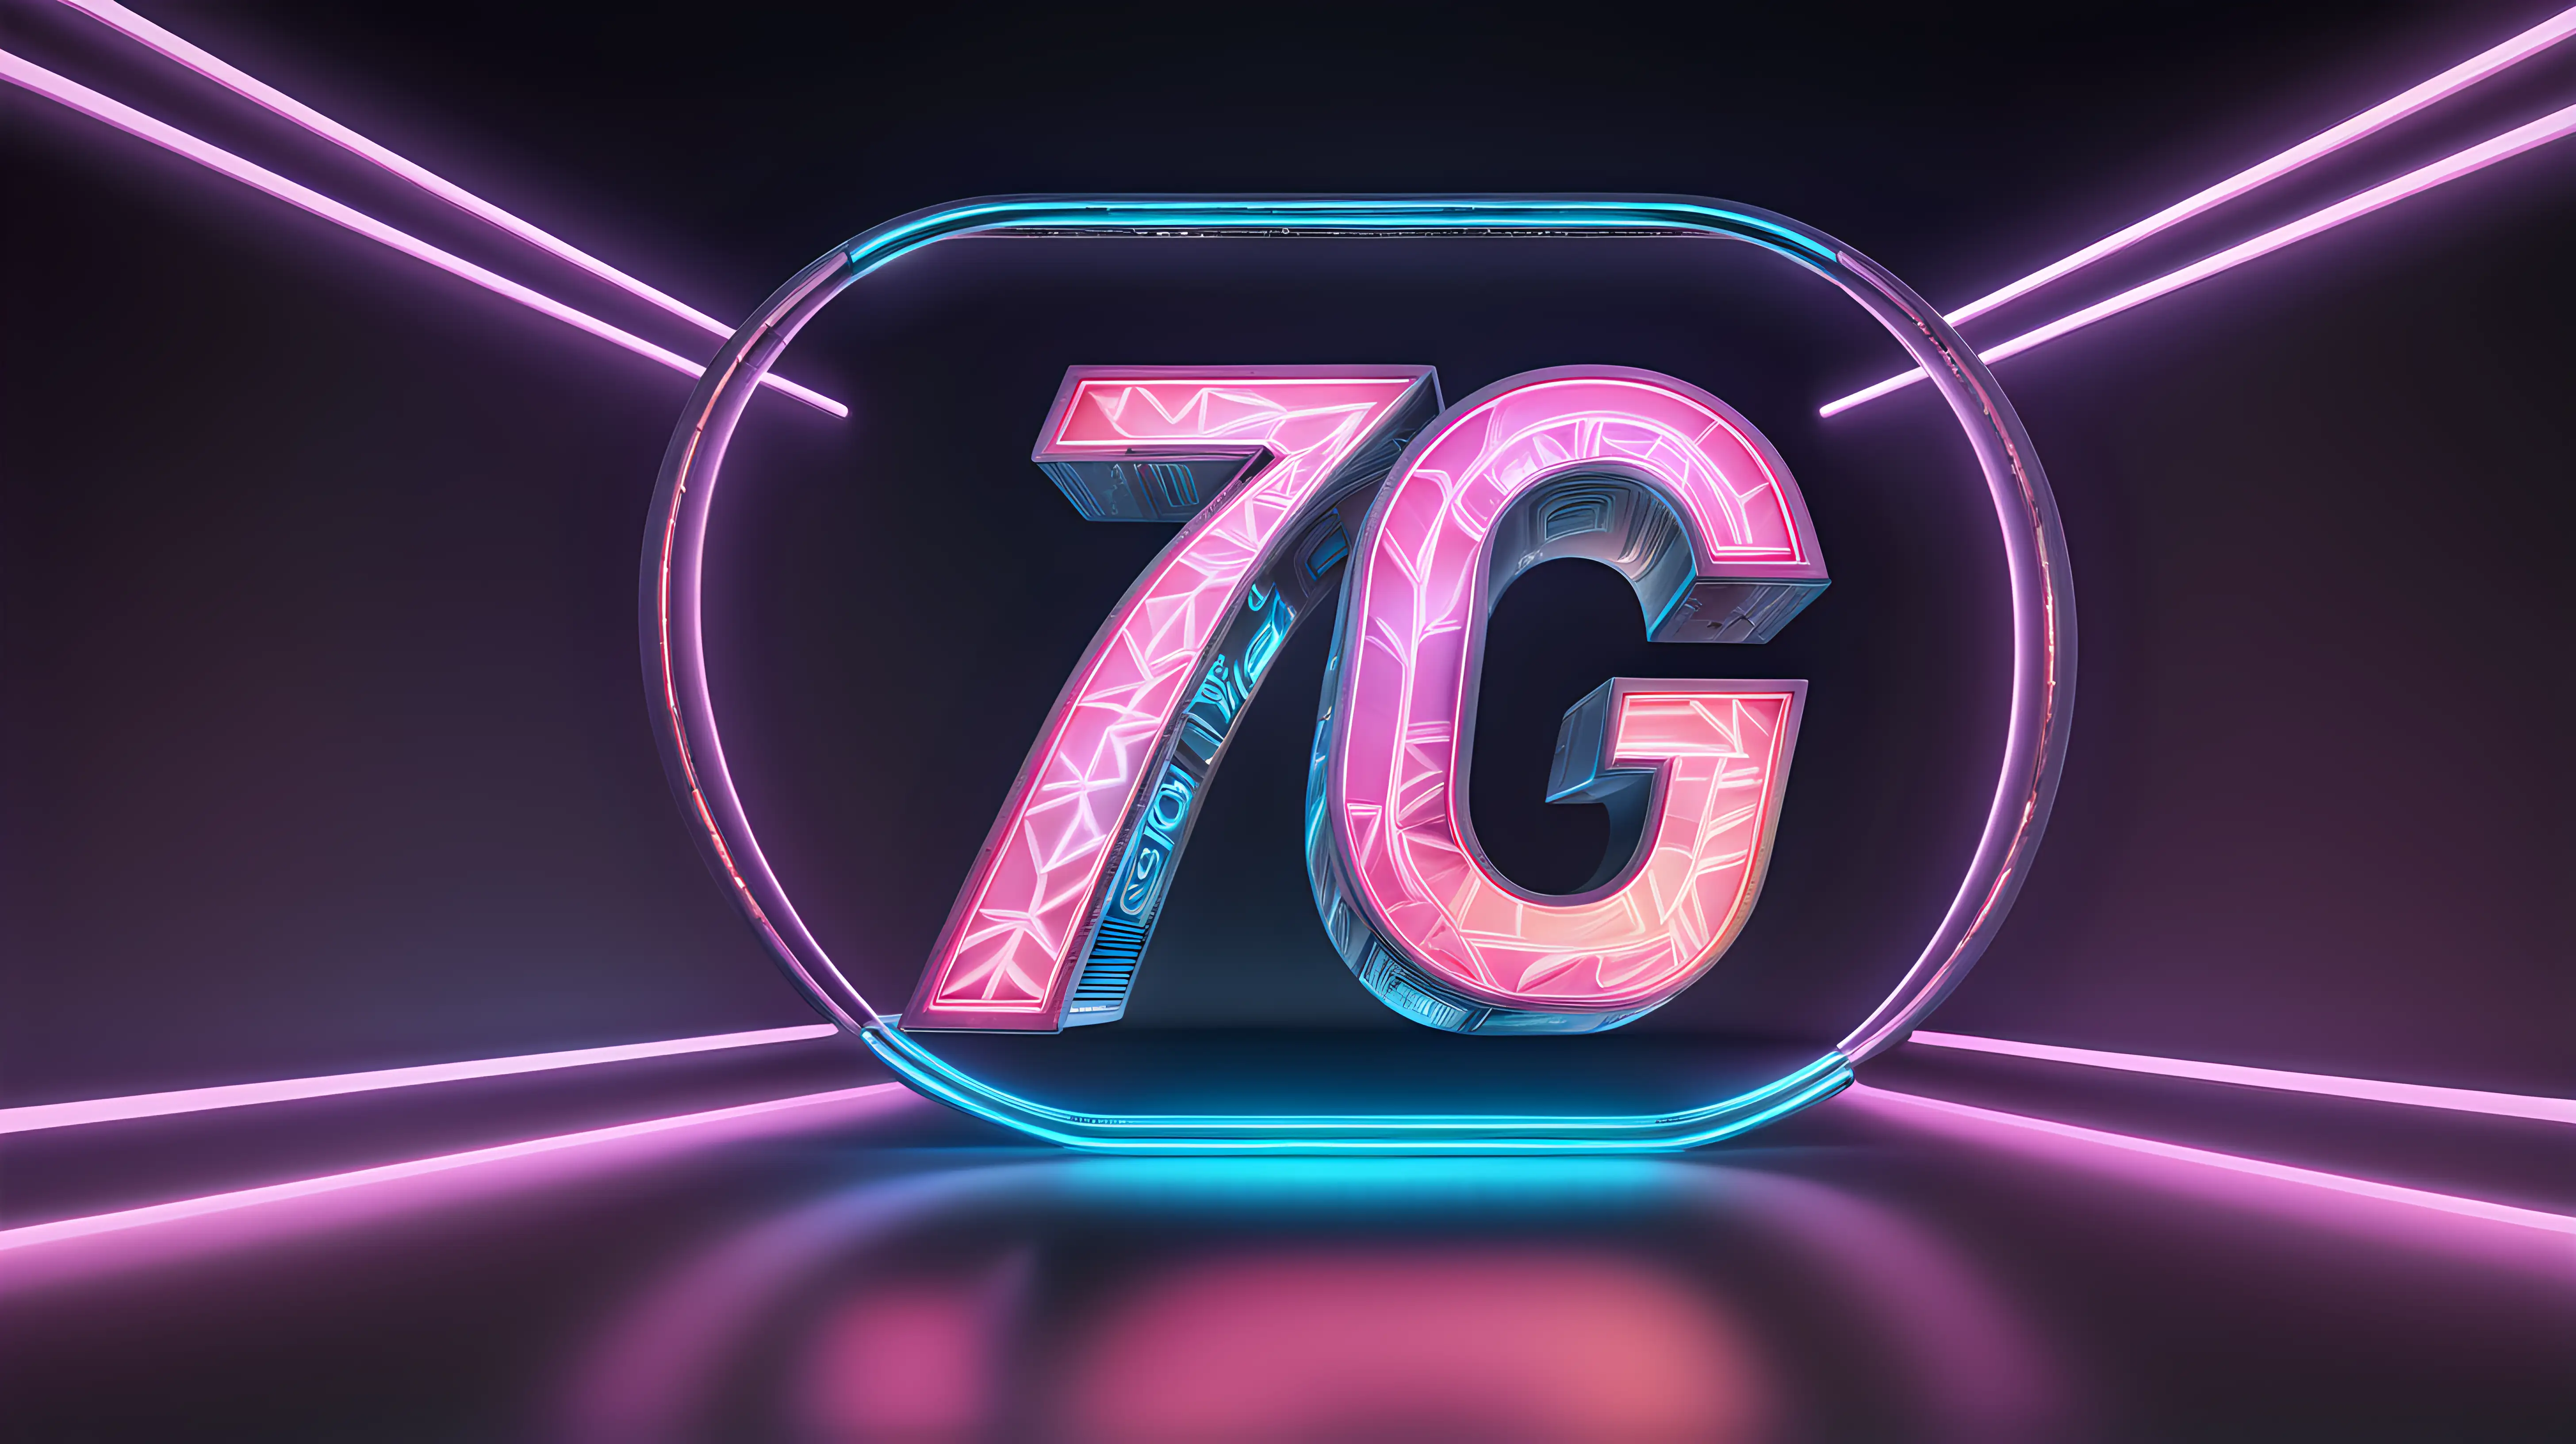 Futuristic Neon Illuminated 7G Technology Symbol on Sleek Dark Background